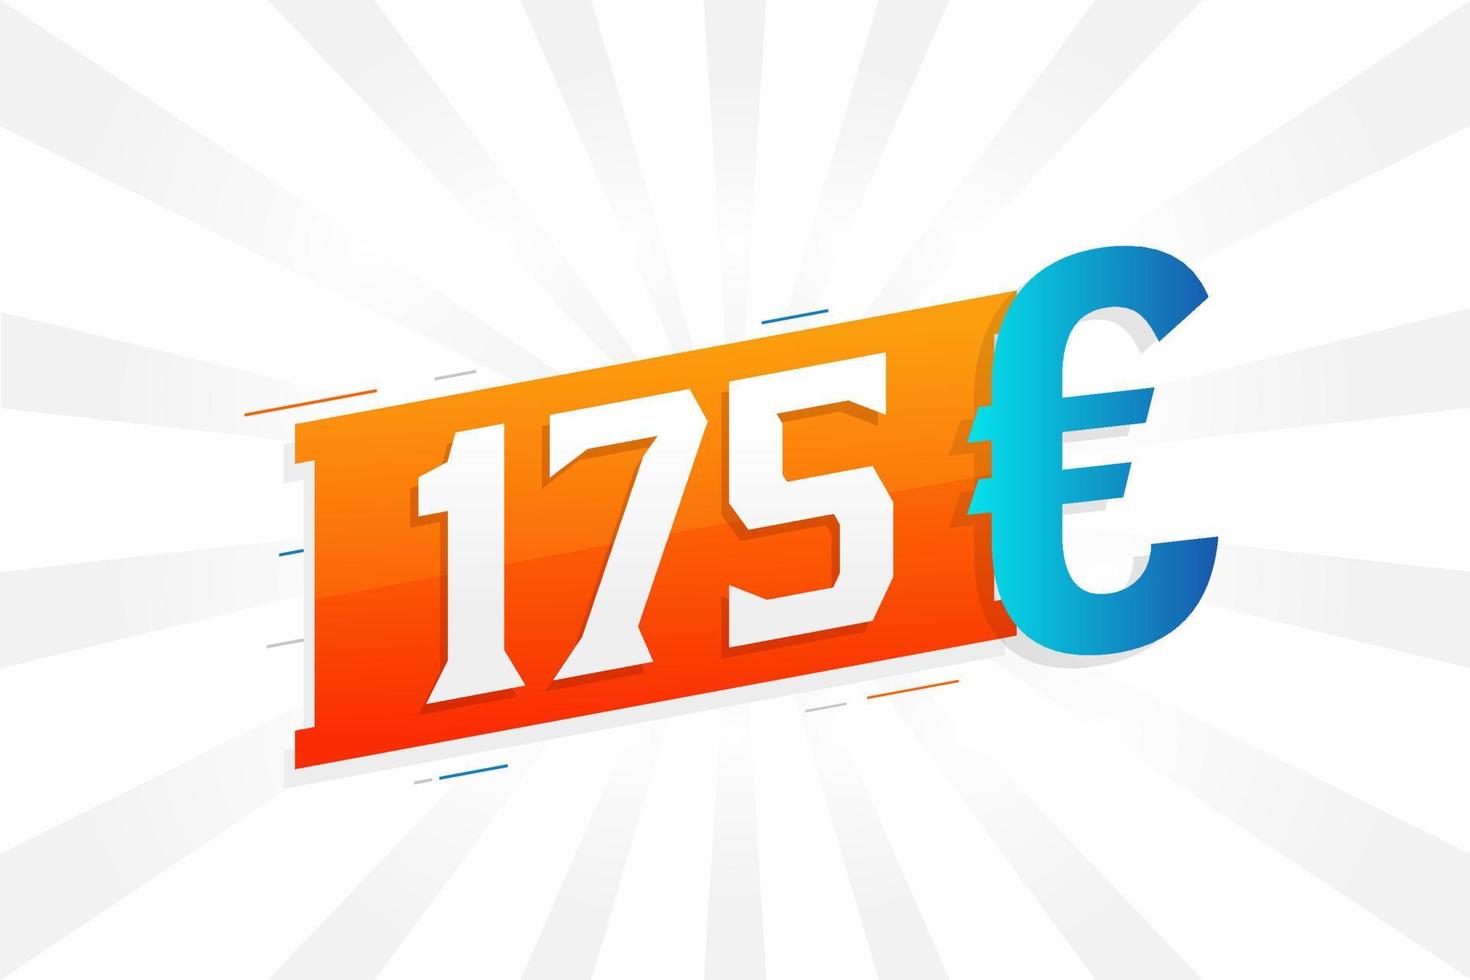 175 Euro Currency vector text symbol. 175 Euro European Union Money stock vector